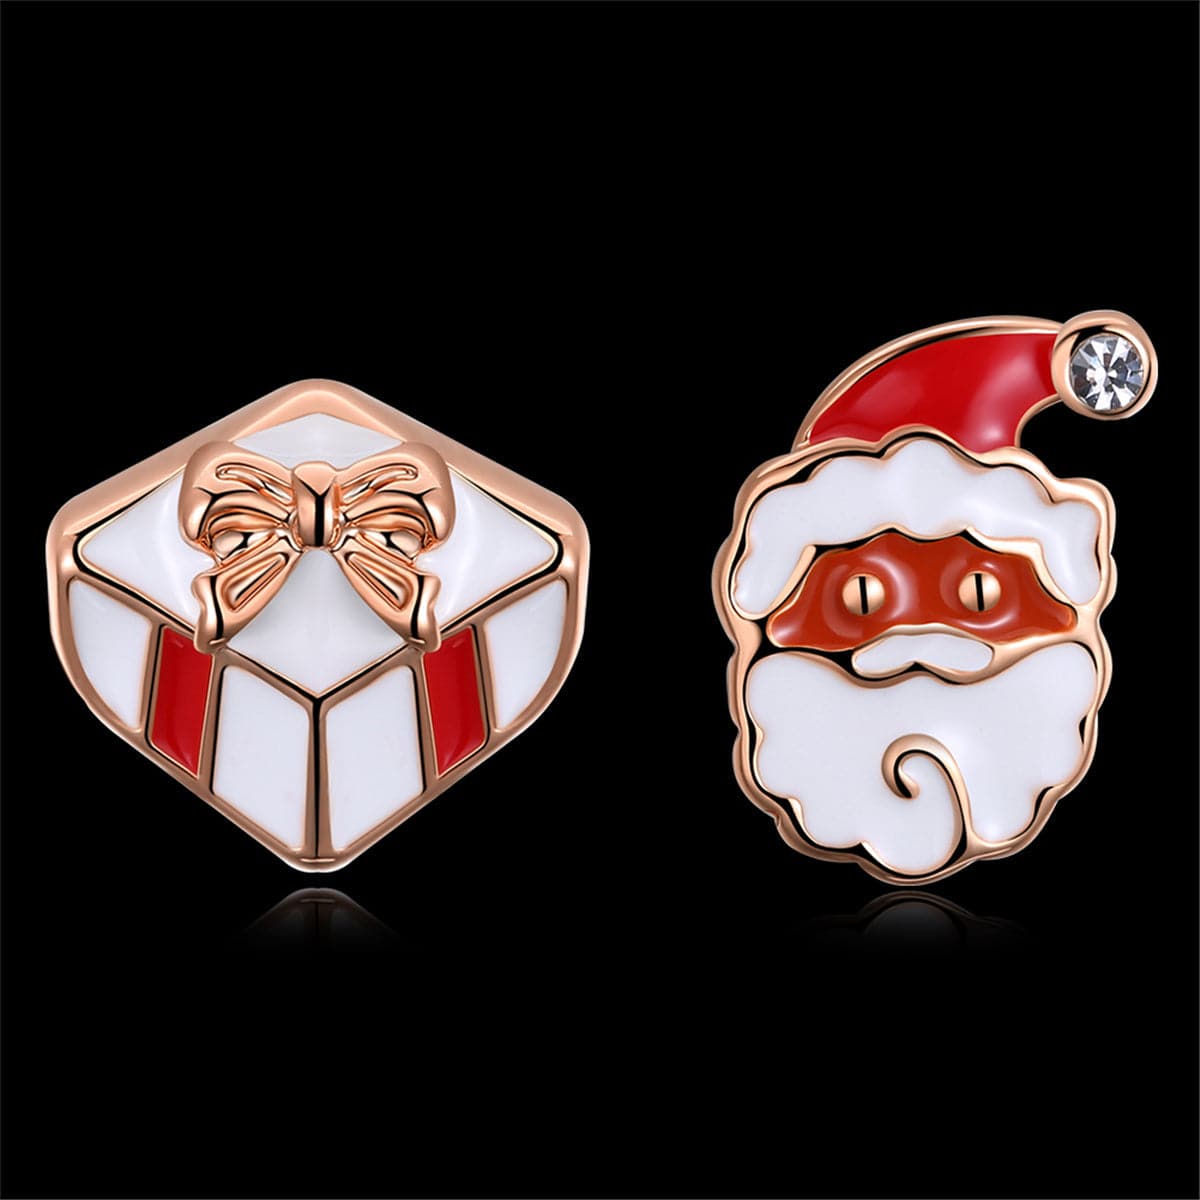 Cubic Zirconia & Red Gift & Santa Stud Earrings